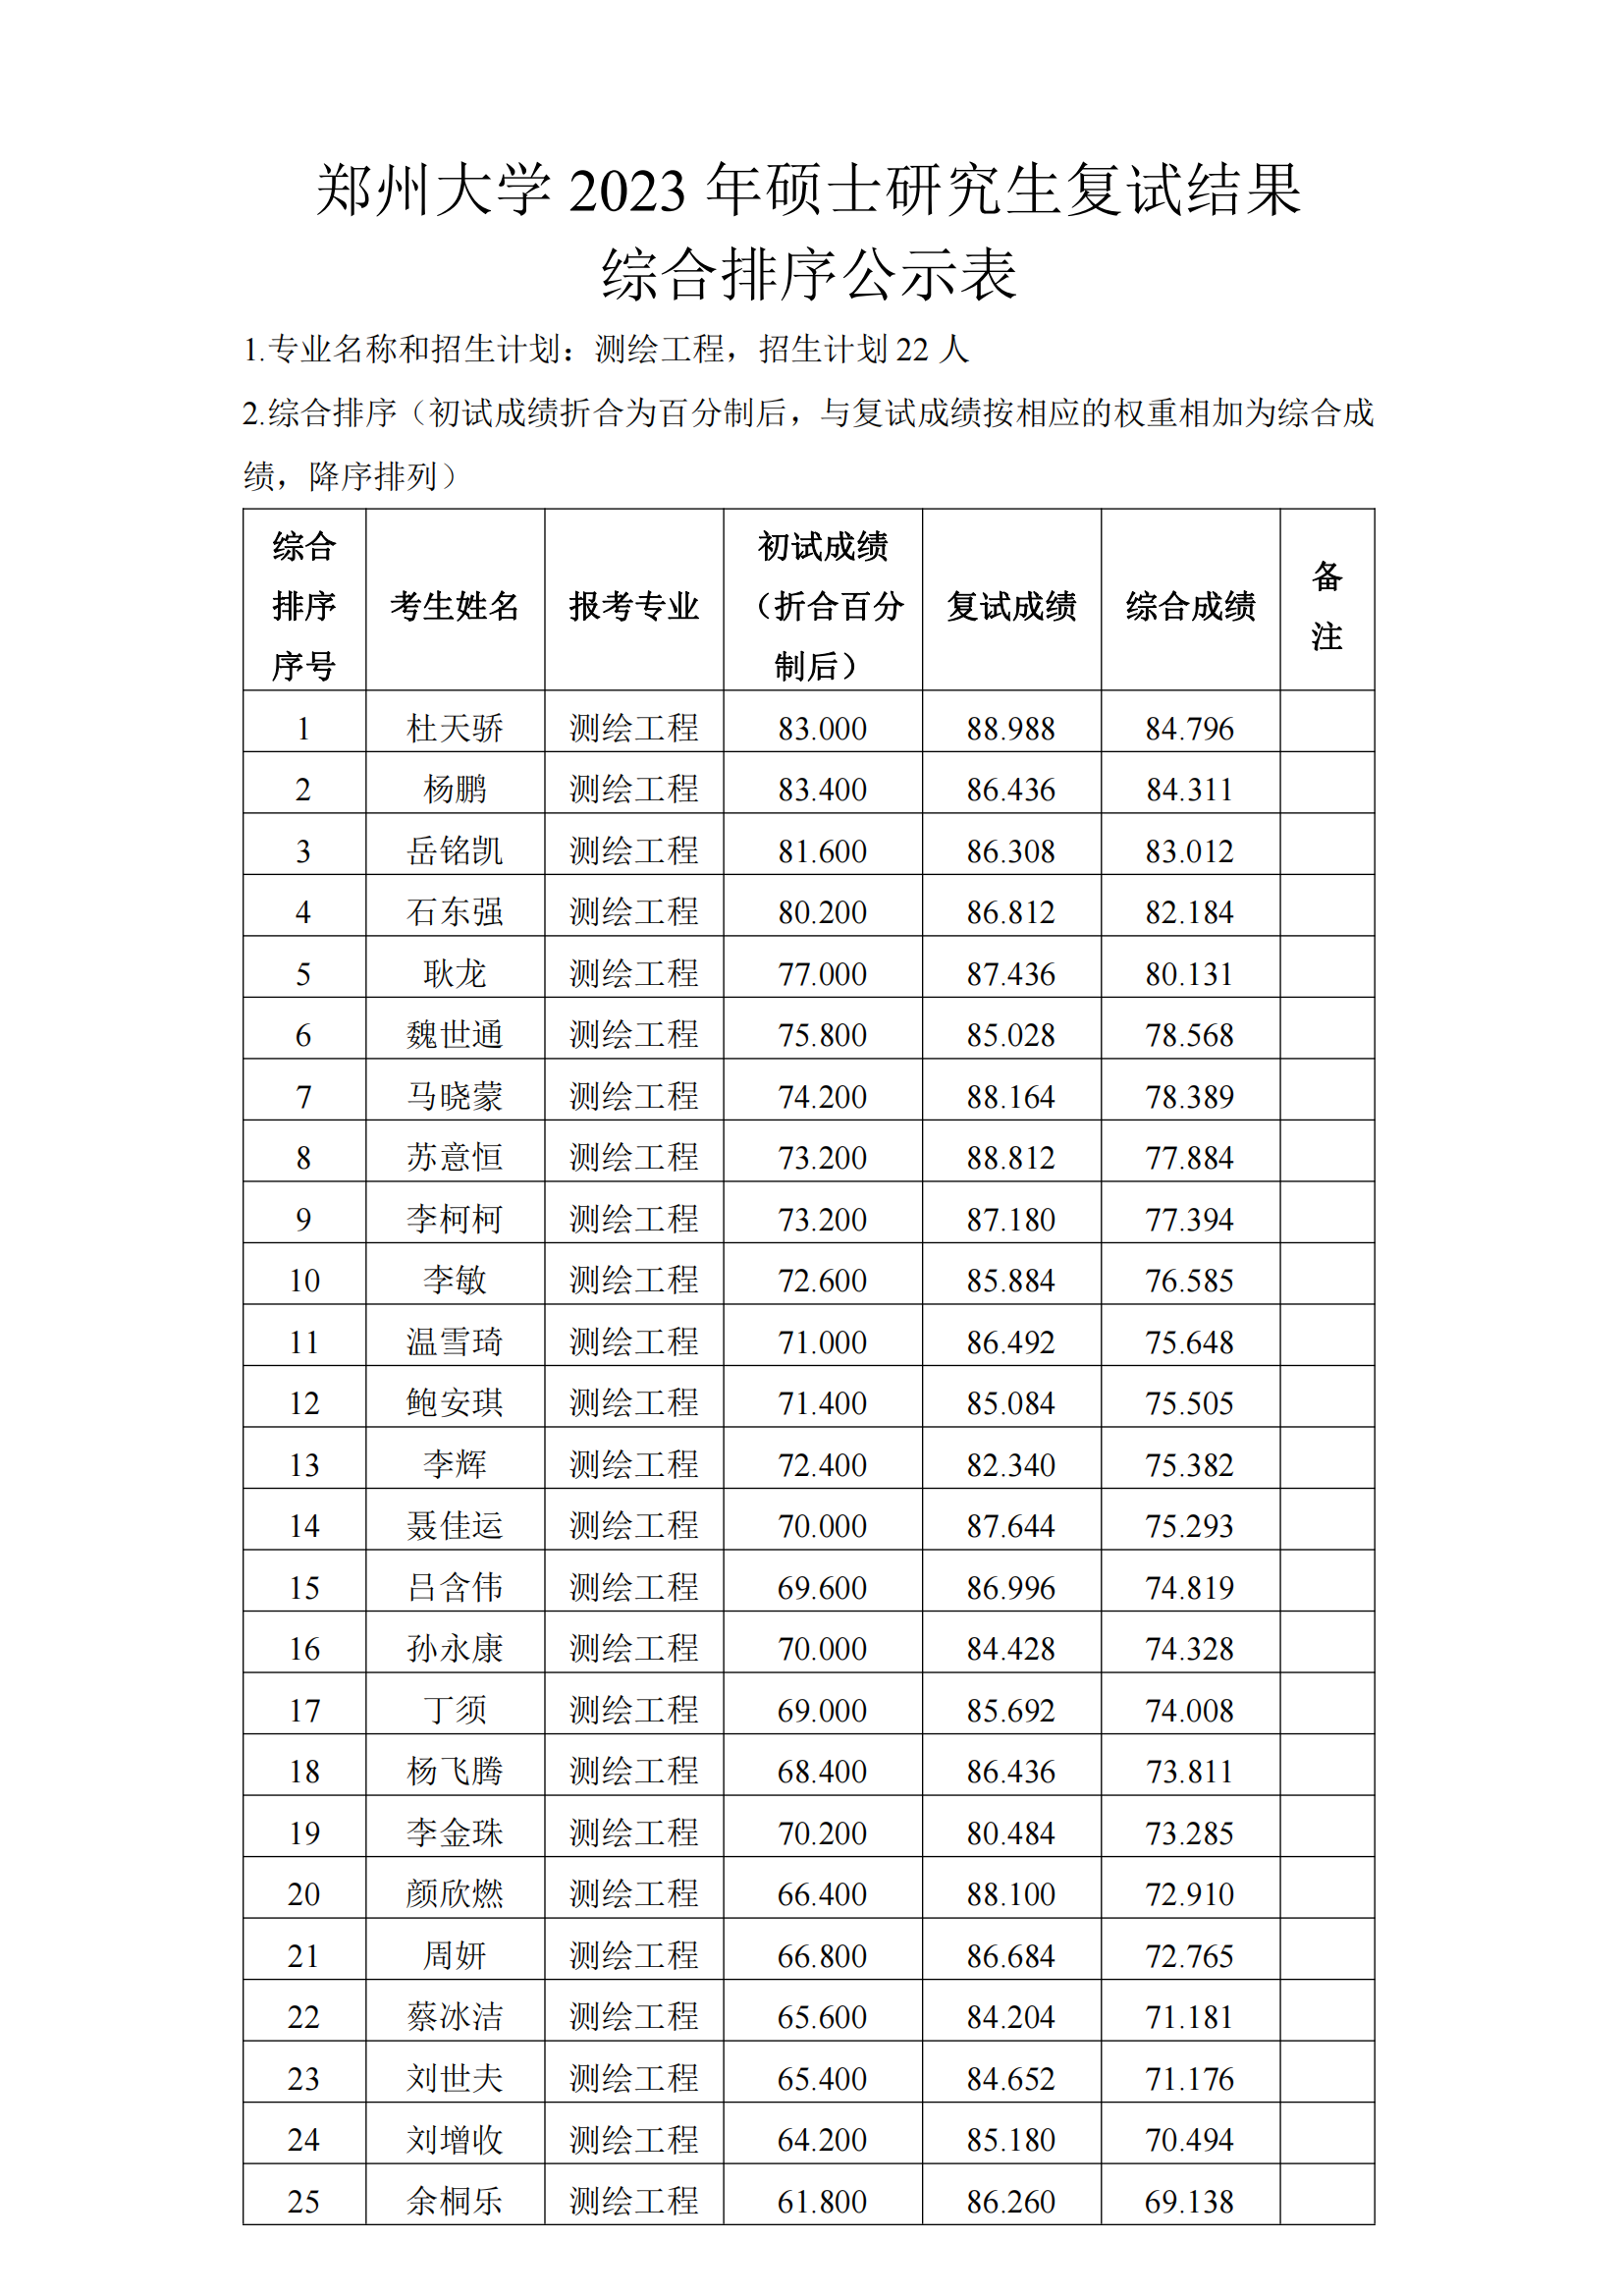 郑州大学地球科学与技术学院2023年硕士研究生复试结果综合排序公示表（测绘工程）_00.png